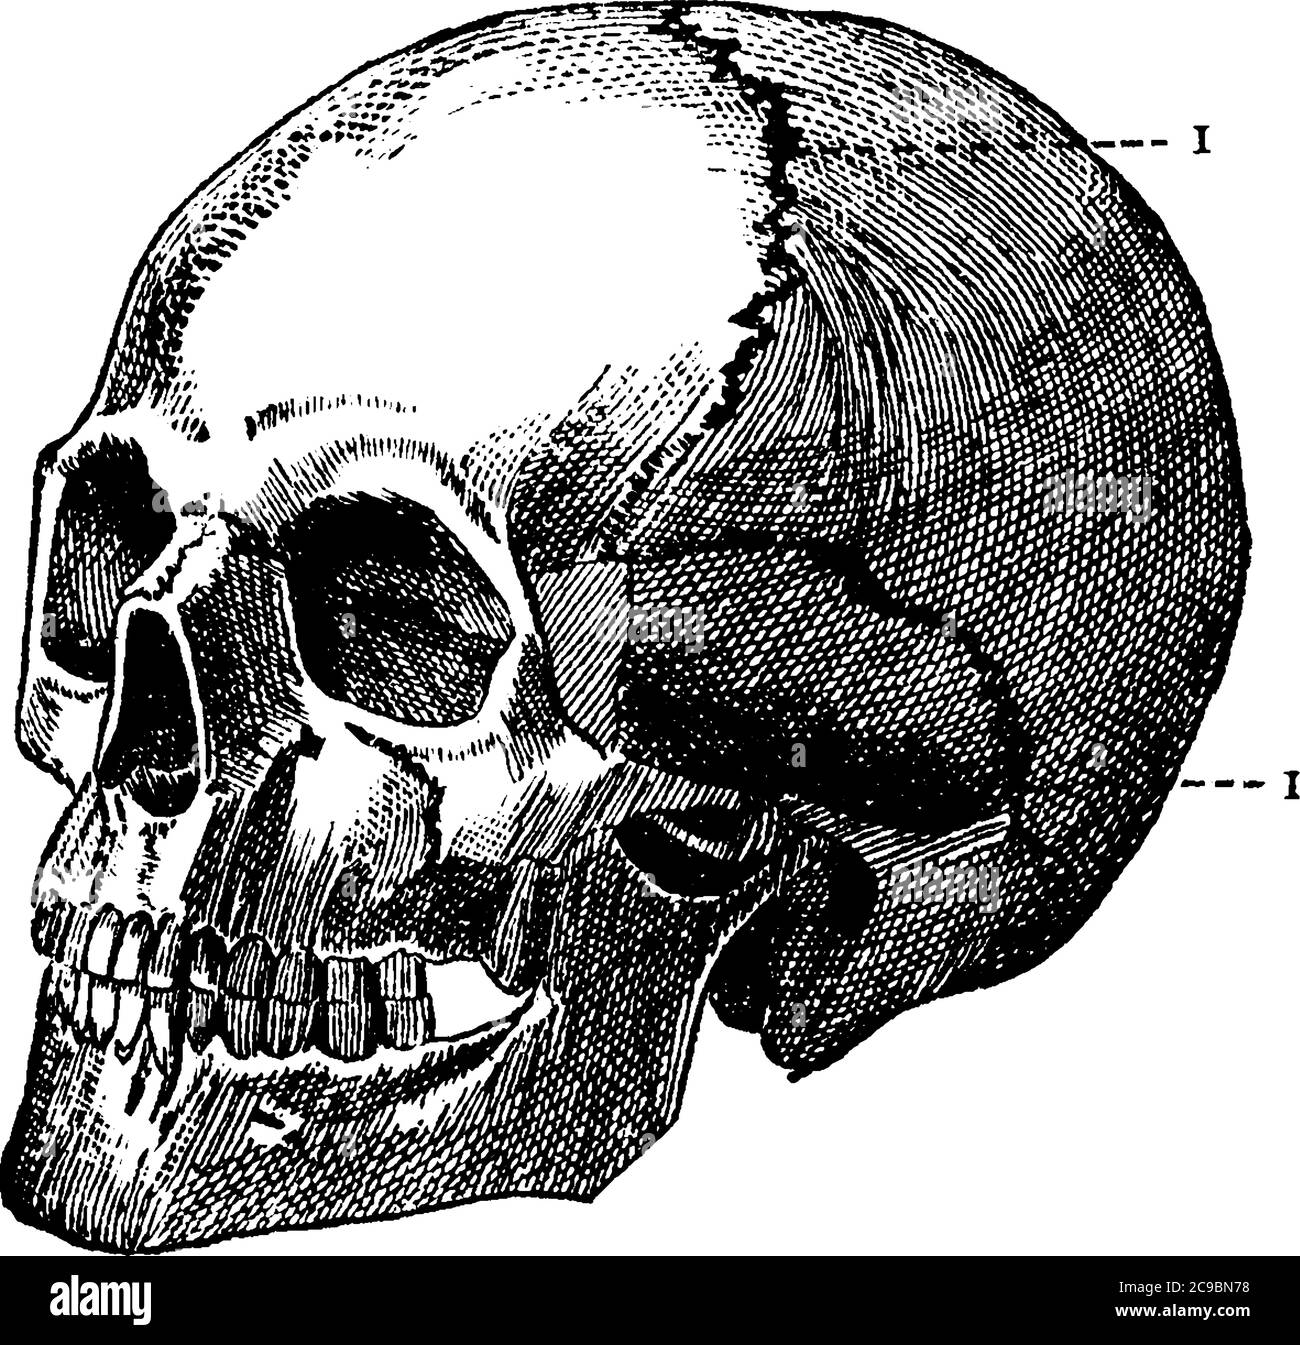 Eine typische Darstellung eines menschlichen Schädels, eine knöcherne Struktur, die den Kopf bei Wirbeltieren bildet, eine Vintage-Linienzeichnung oder Gravurdarstellung. Stock Vektor